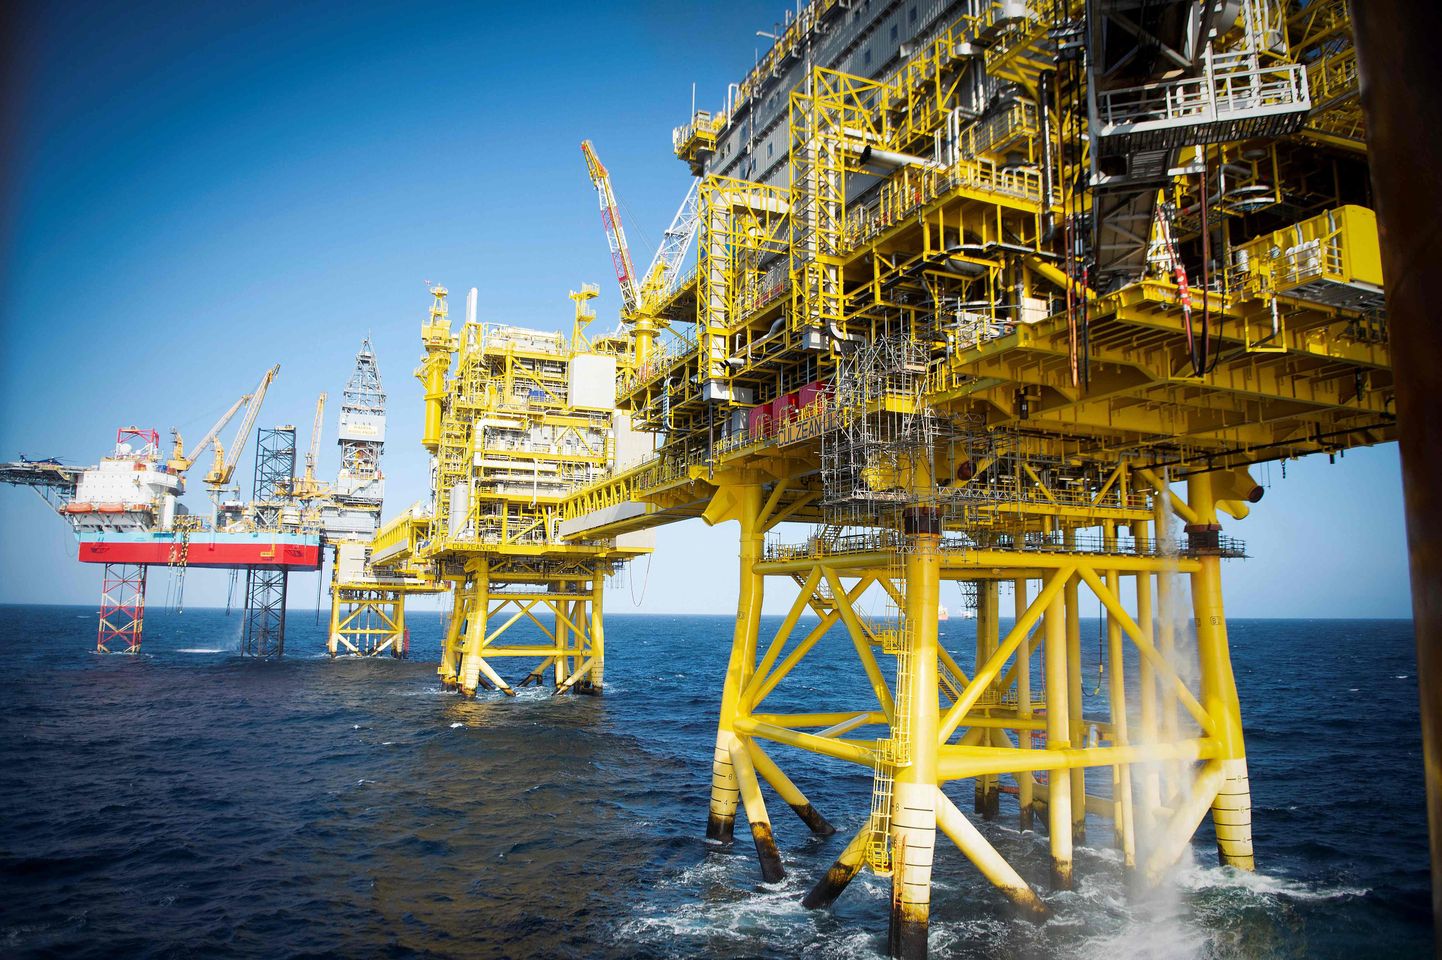 The Total Culzean naftaplatvorm Põhjameres ligikaudu 45 miili (70 kilomeetri) kaugusel Aberdeeni rannikust idas. Üht suurimat naftapuurimisettevõtet Total artiklis mainitud kohtuvaidlus hetkel ei puuduta. (Photo by ANDY BUCHANAN / AFP)